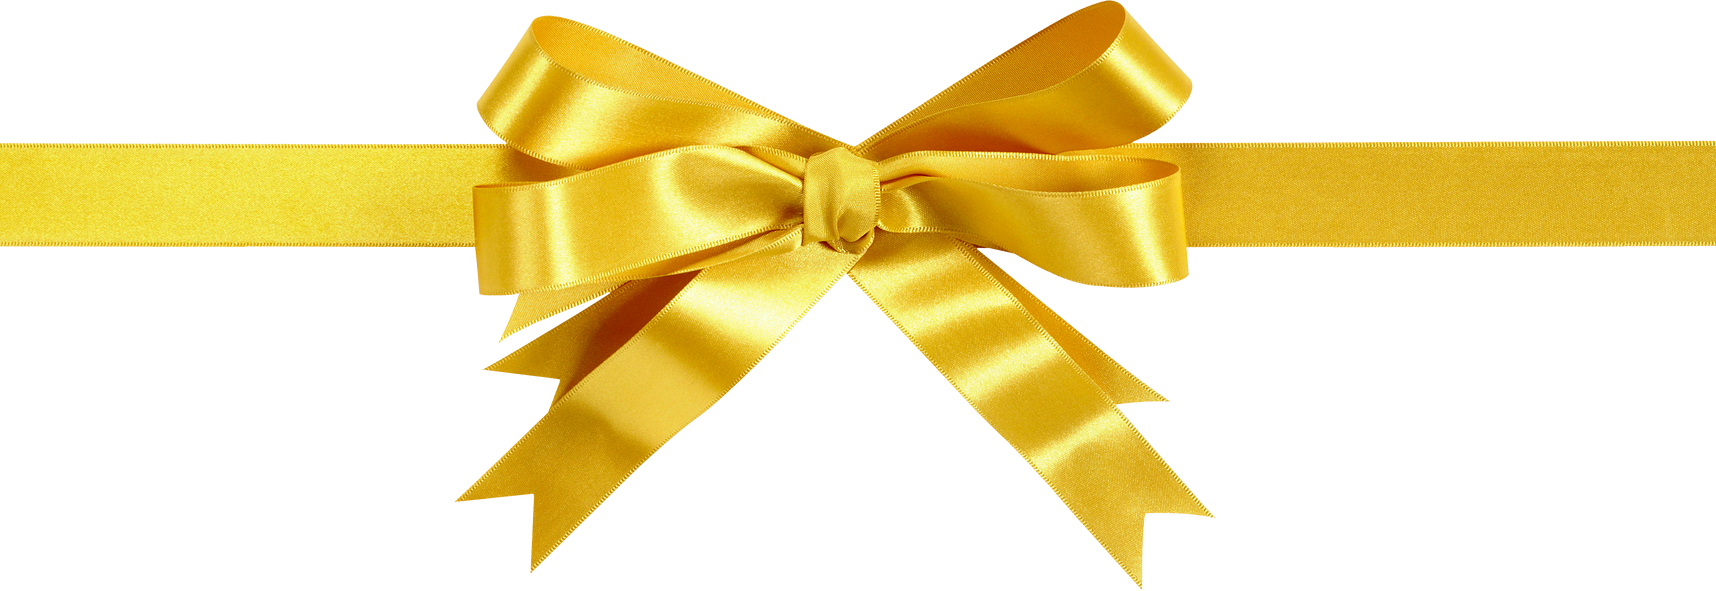 Gold Gift Ribbon